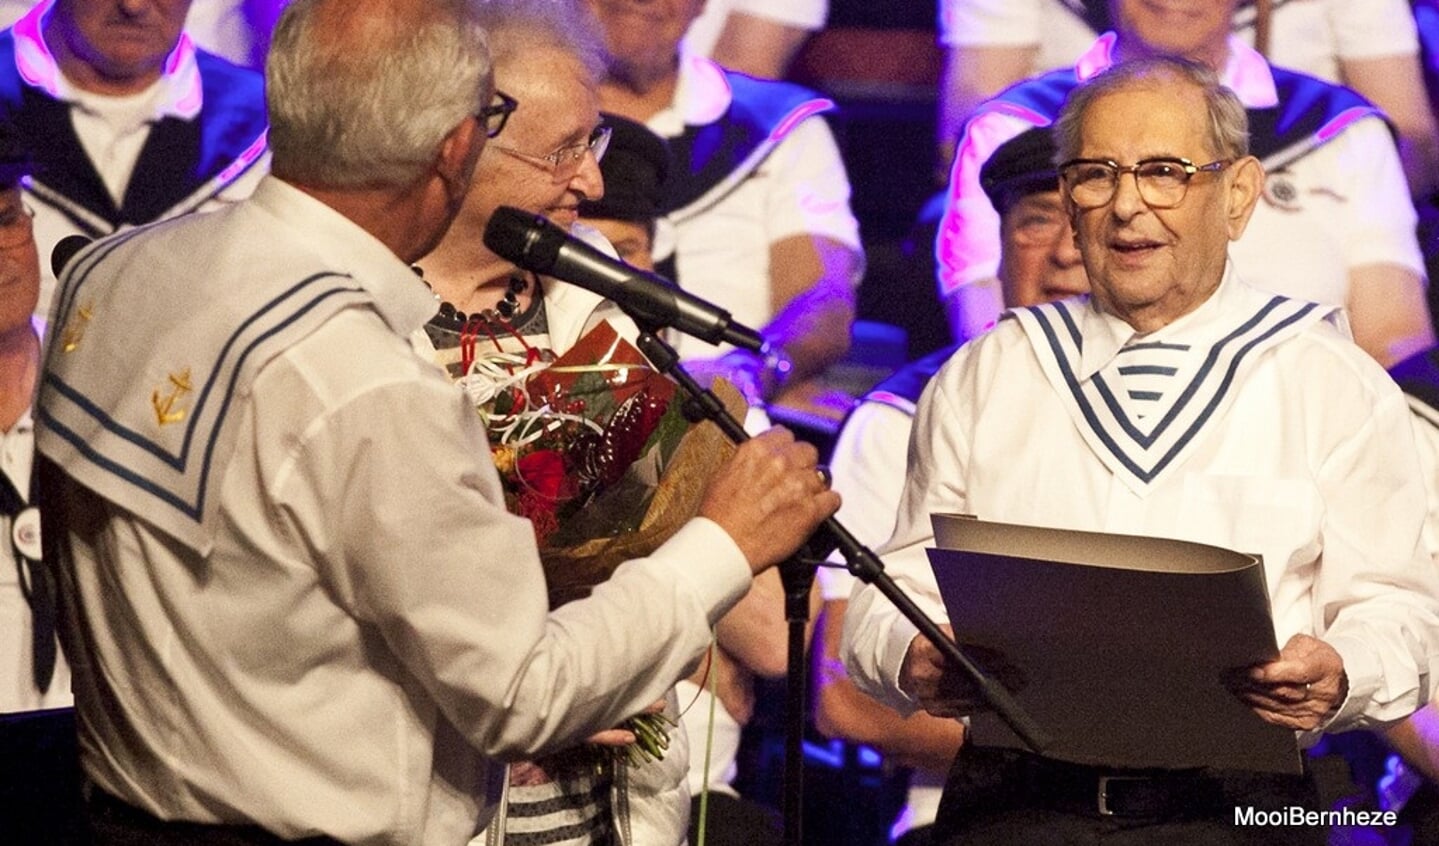 Heesch - Jubileumconcert Maasland Senioren Orkest 